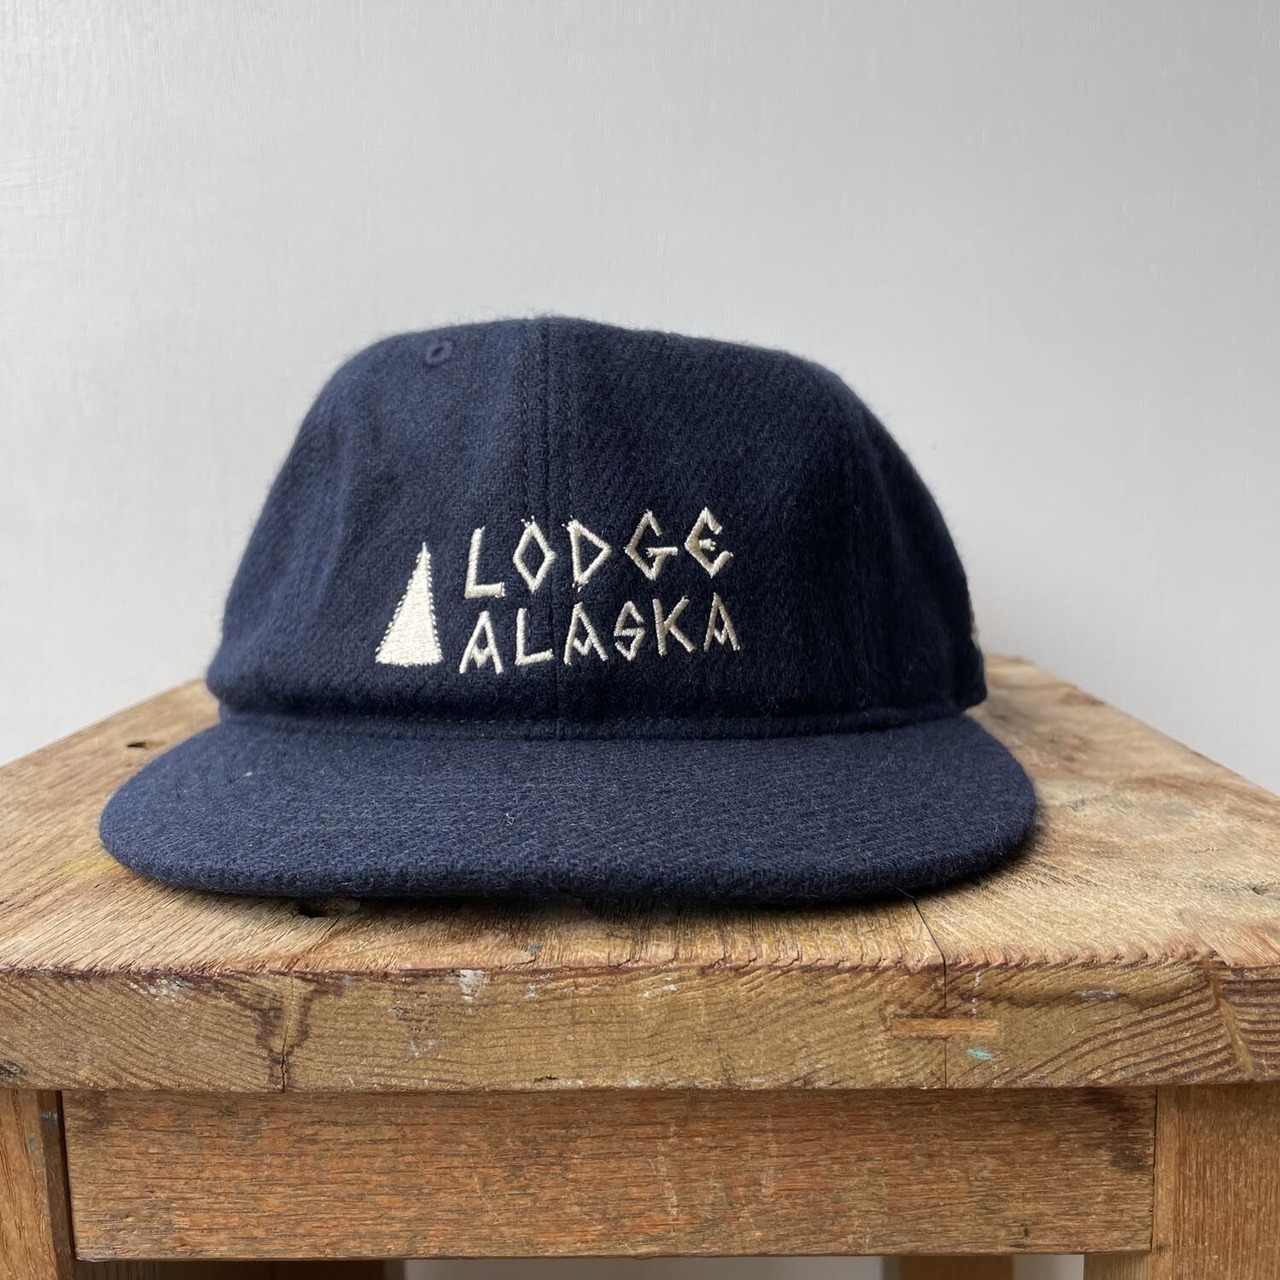 TACOMA FUJI RECORDS / Lodge ALASKA HW LOGO CAP ‘22 designed by Matt Leines